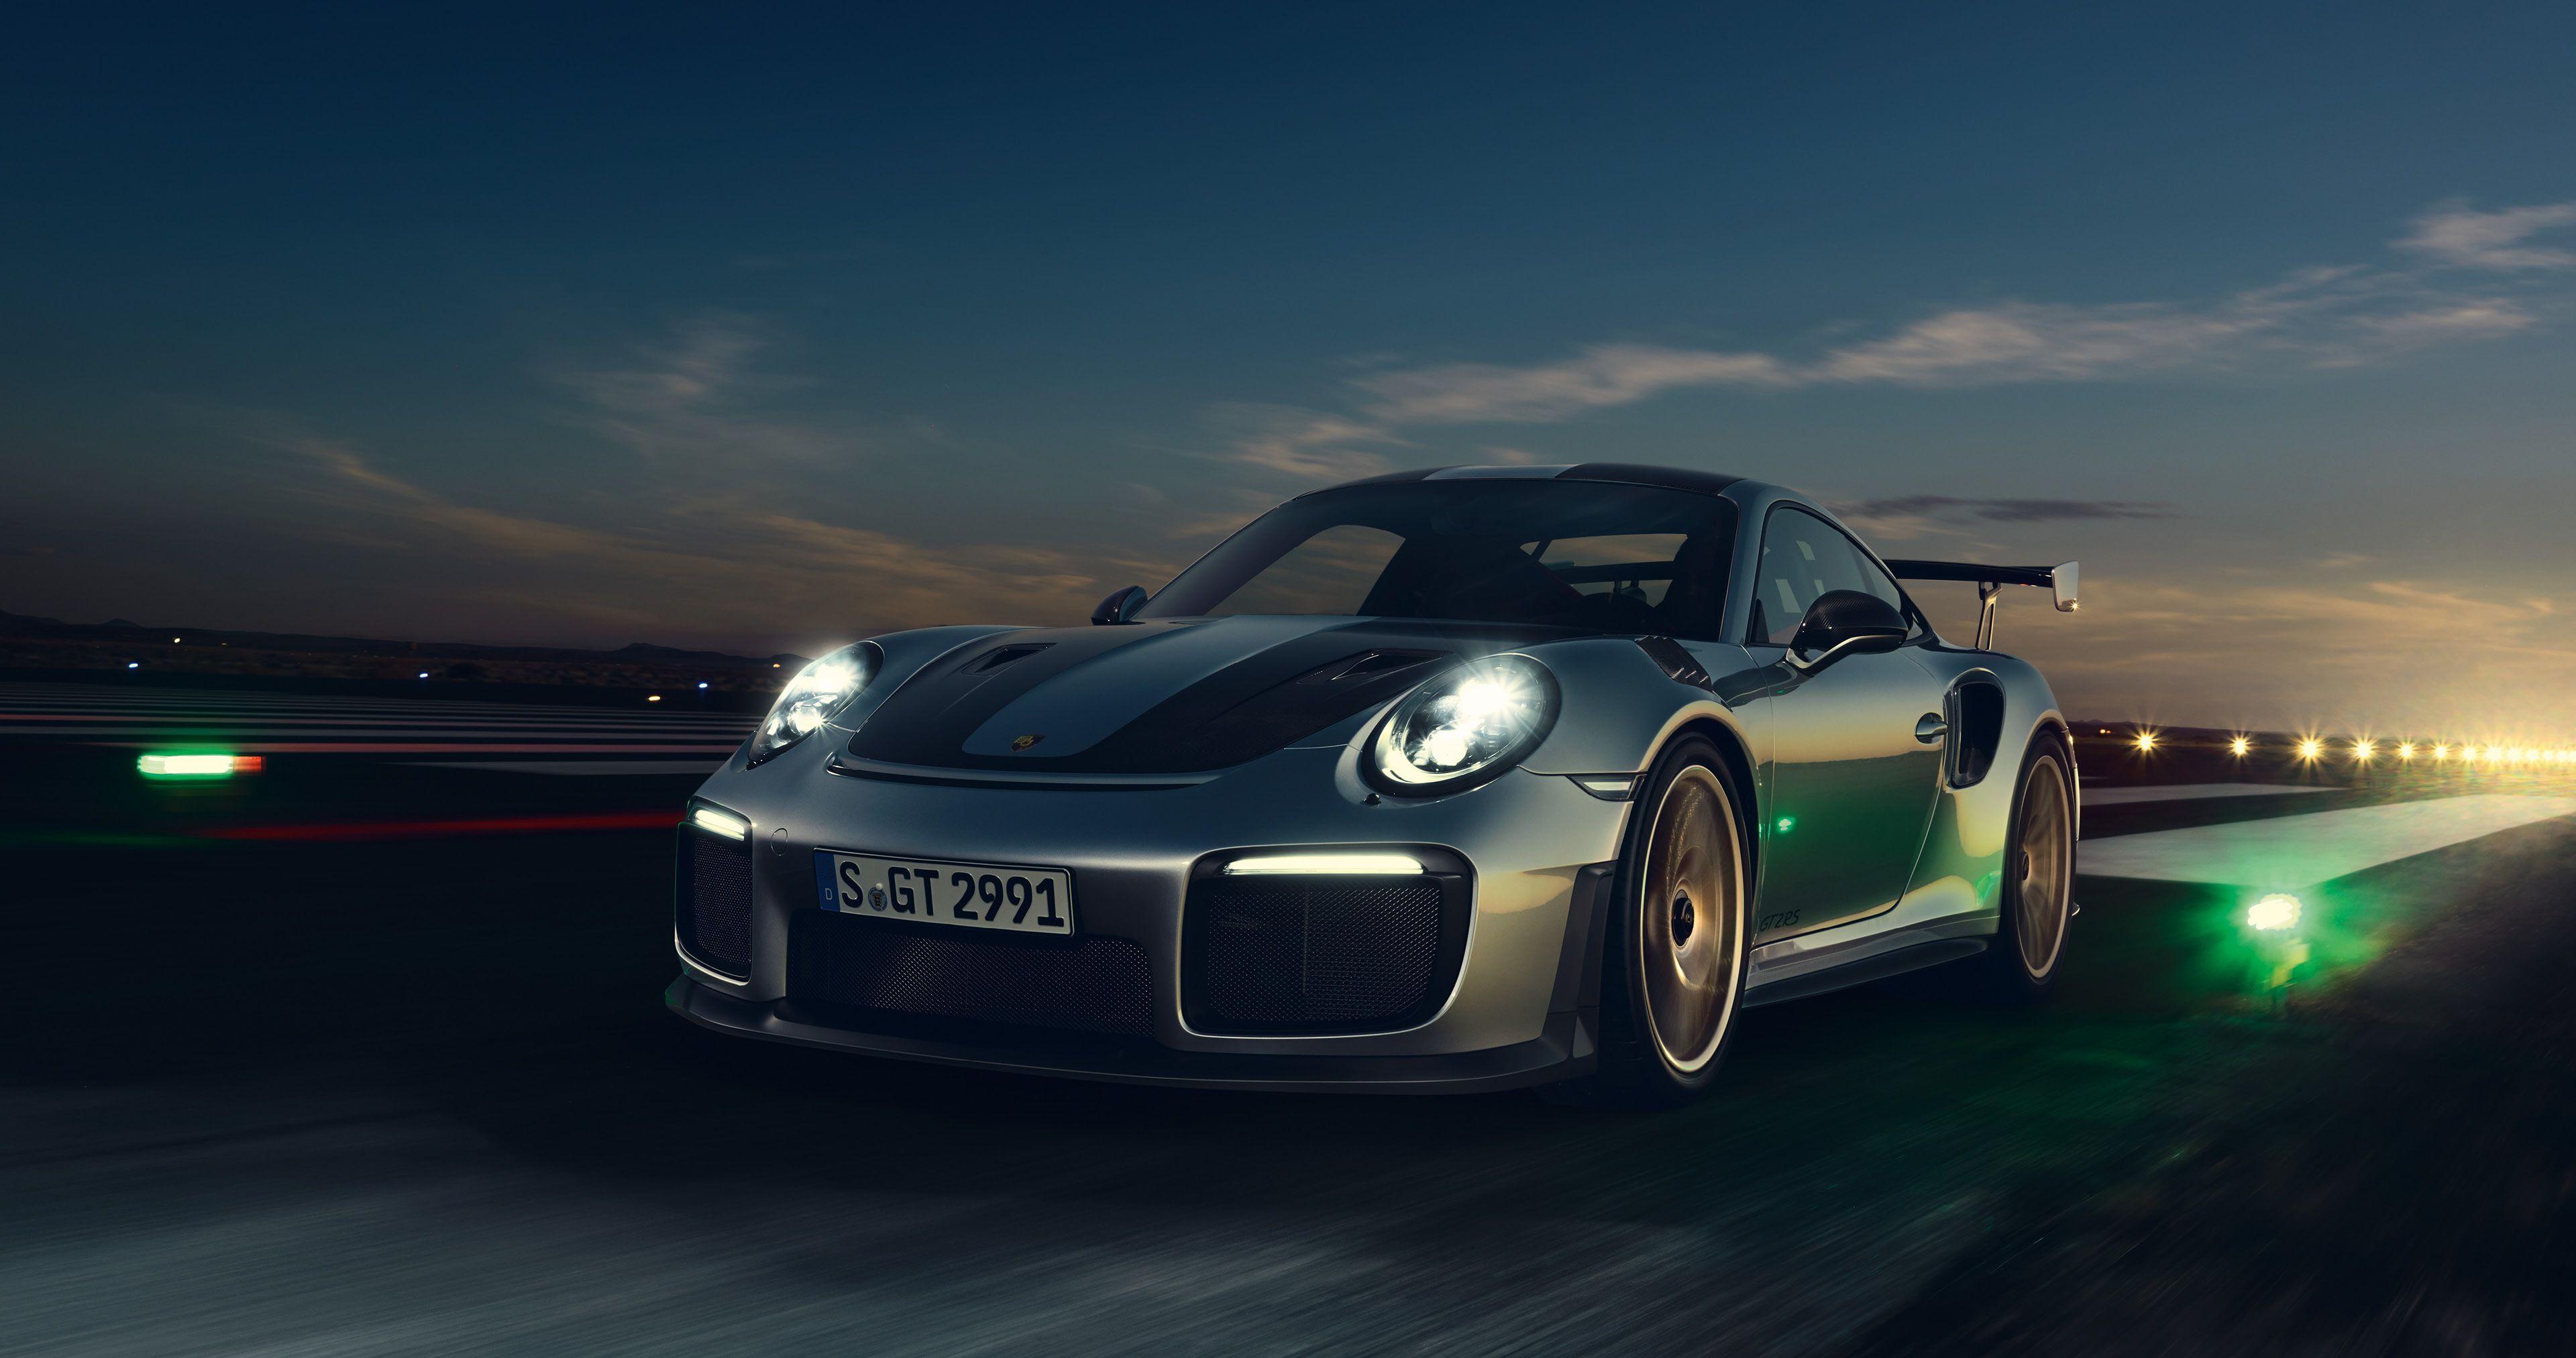 4k Porsche 911 Gt2 Wallpapers Top Free 4k Porsche 911 Gt2 Backgrounds Wallpaperaccess